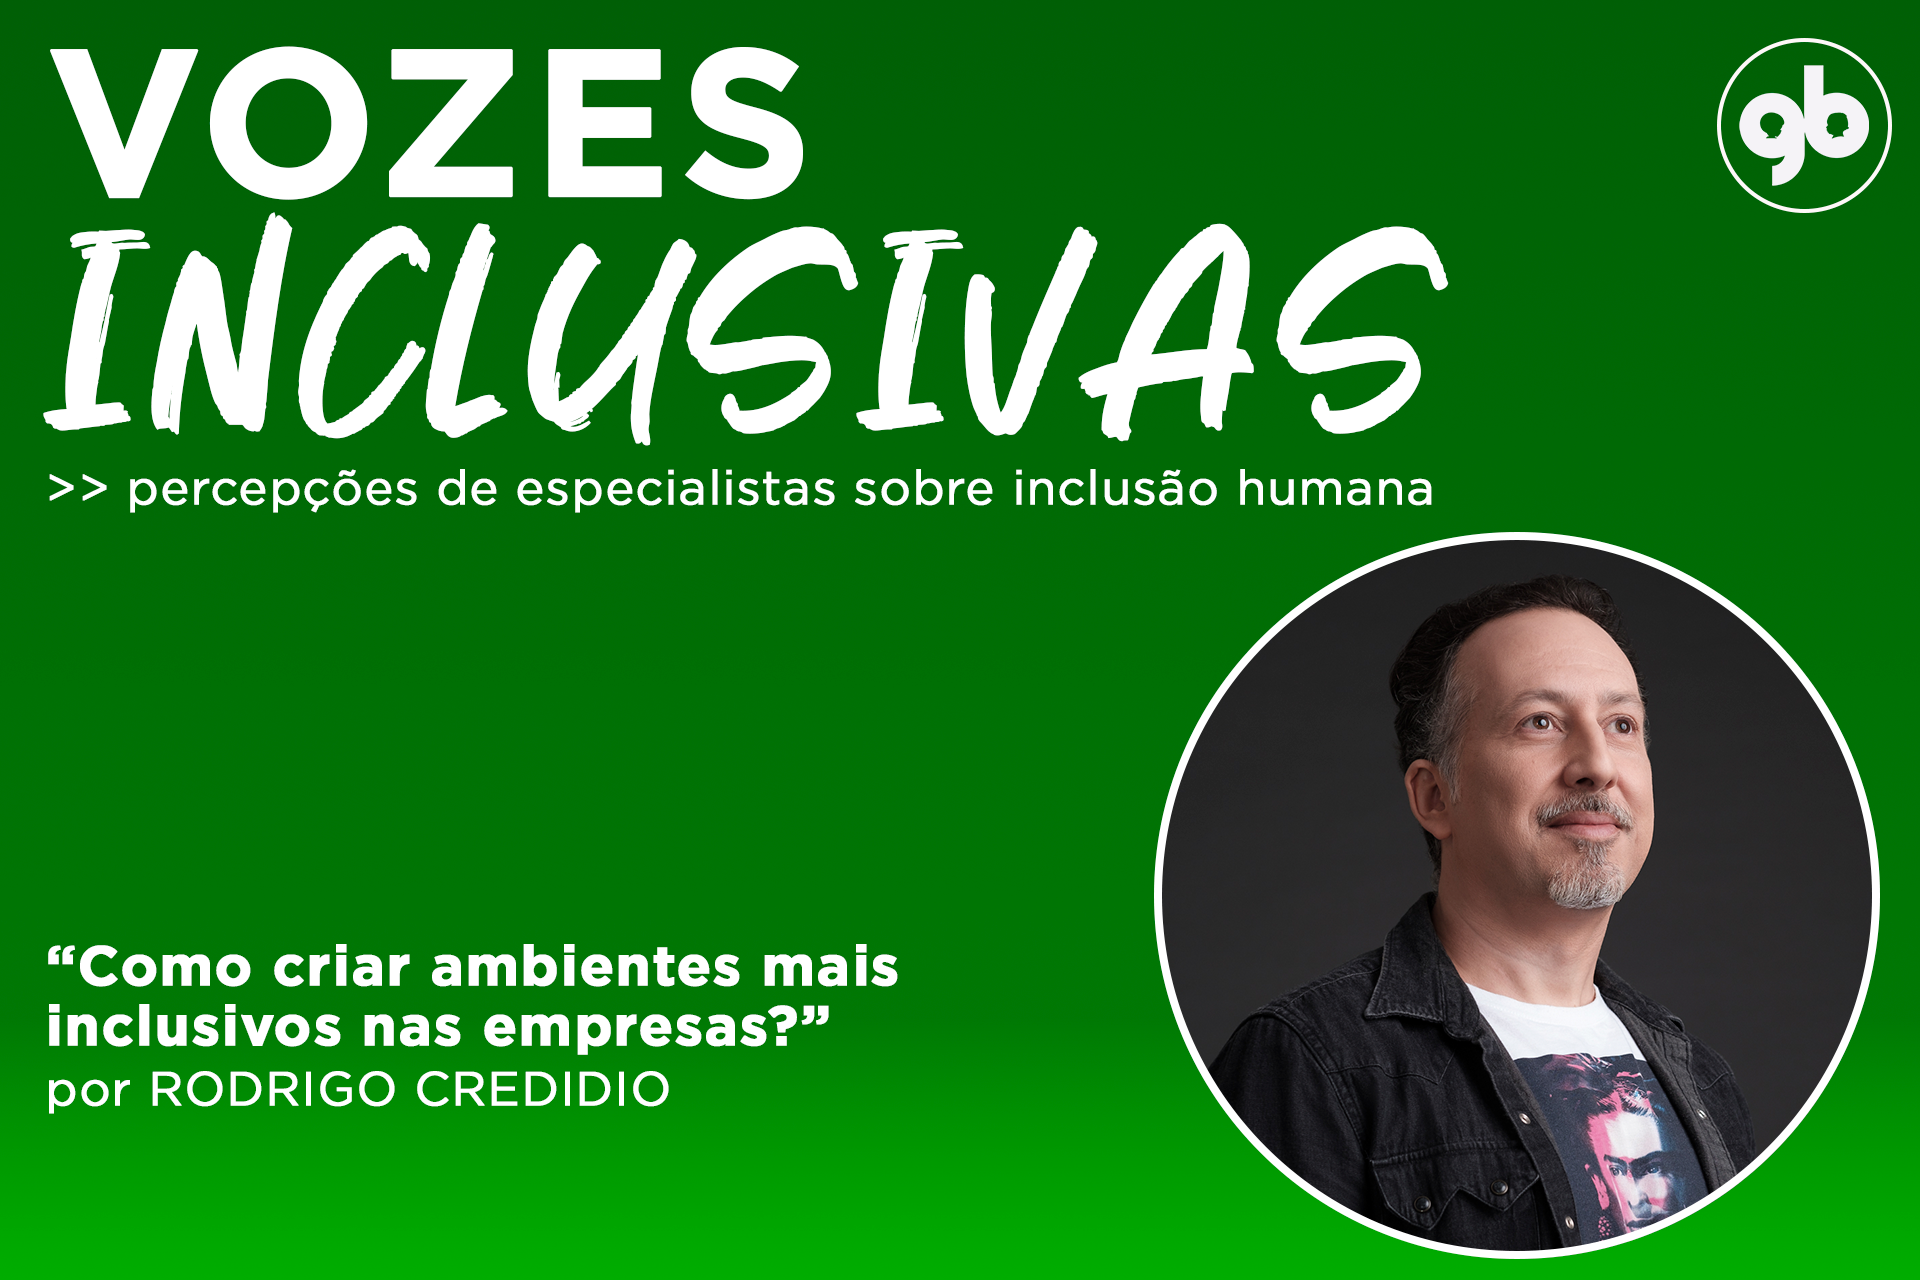 sobre fundo degradê verde, o título Vozes Inclusivas em branco e foto de Rodrigo à direita